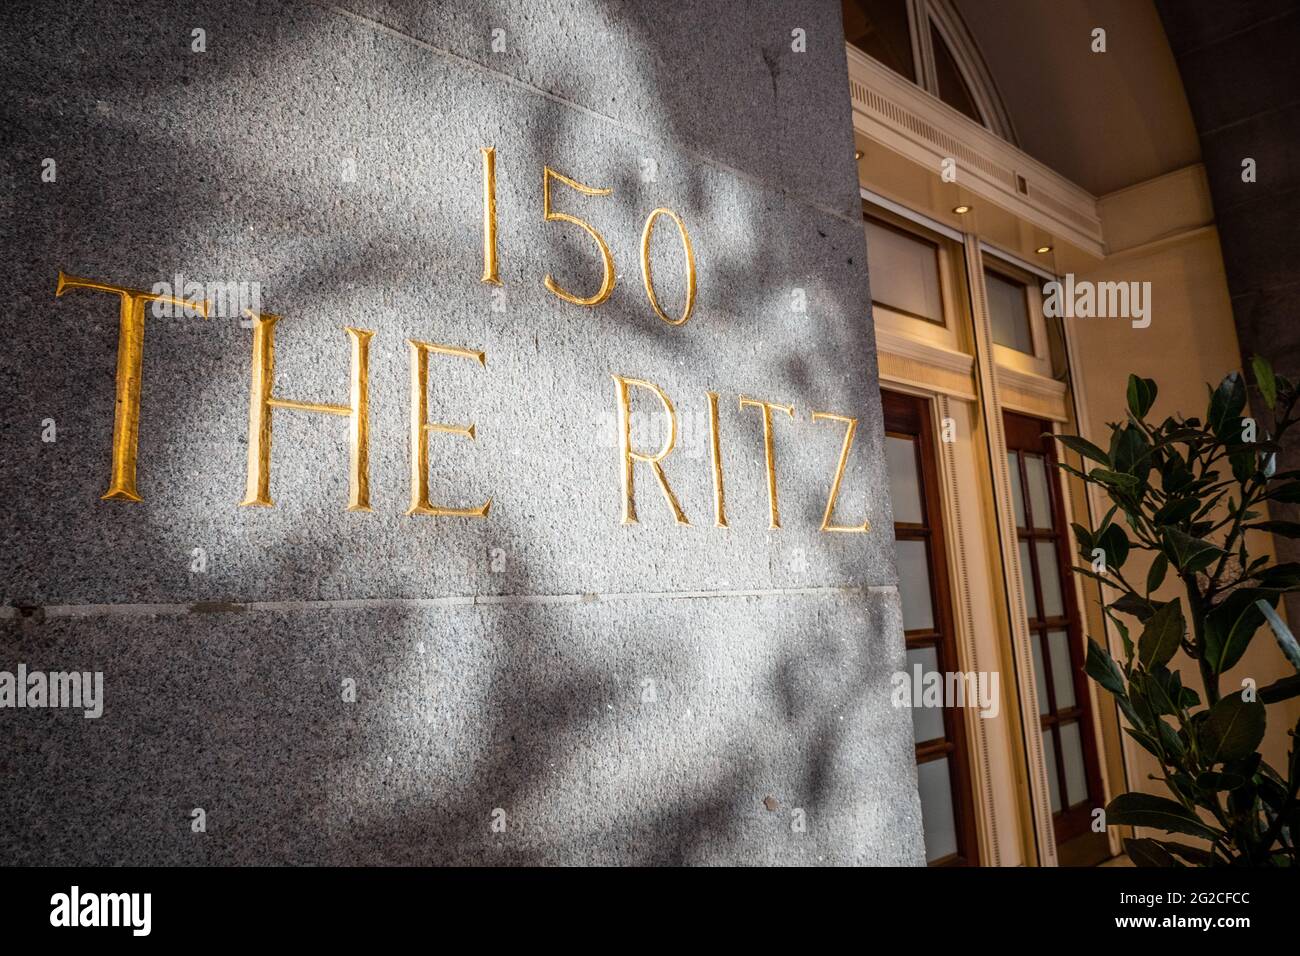 150 The Ritz, Londra. L'hotel a 5 stelle di categoria II, classificato a Londra, su Piccadilly, e' diventato un simbolo di alta societa' e lusso. Foto Stock